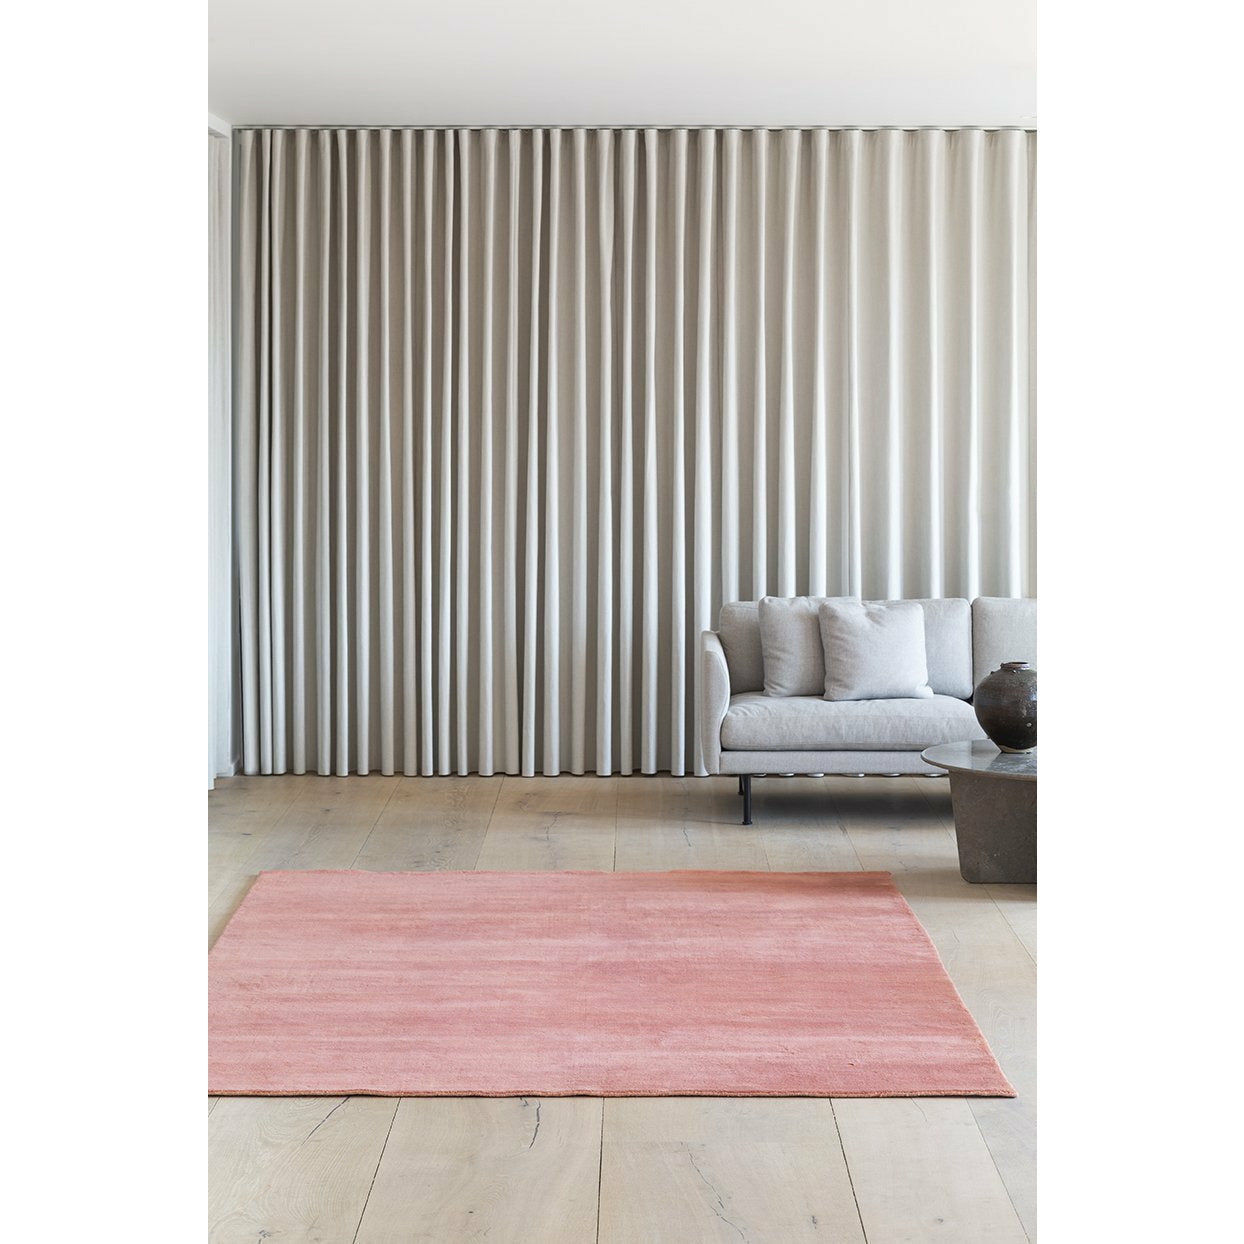 Massimo Jorden bambu matta terra cotta, 140x200 cm